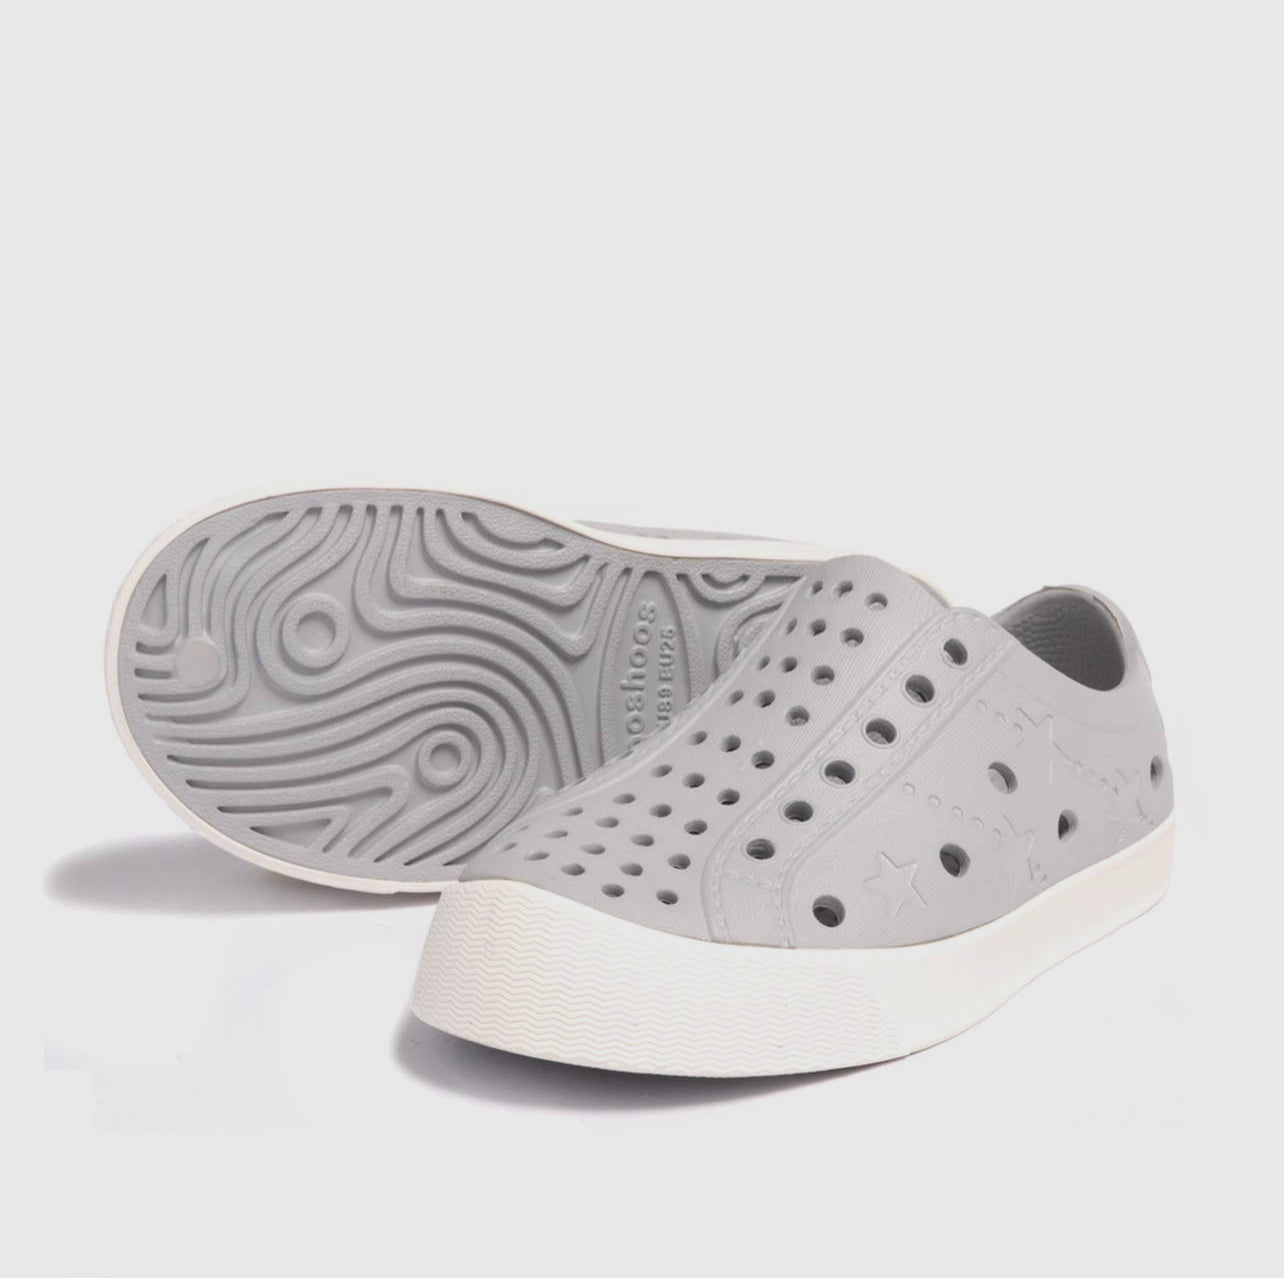 ShooShoes Waterproof Sneakers